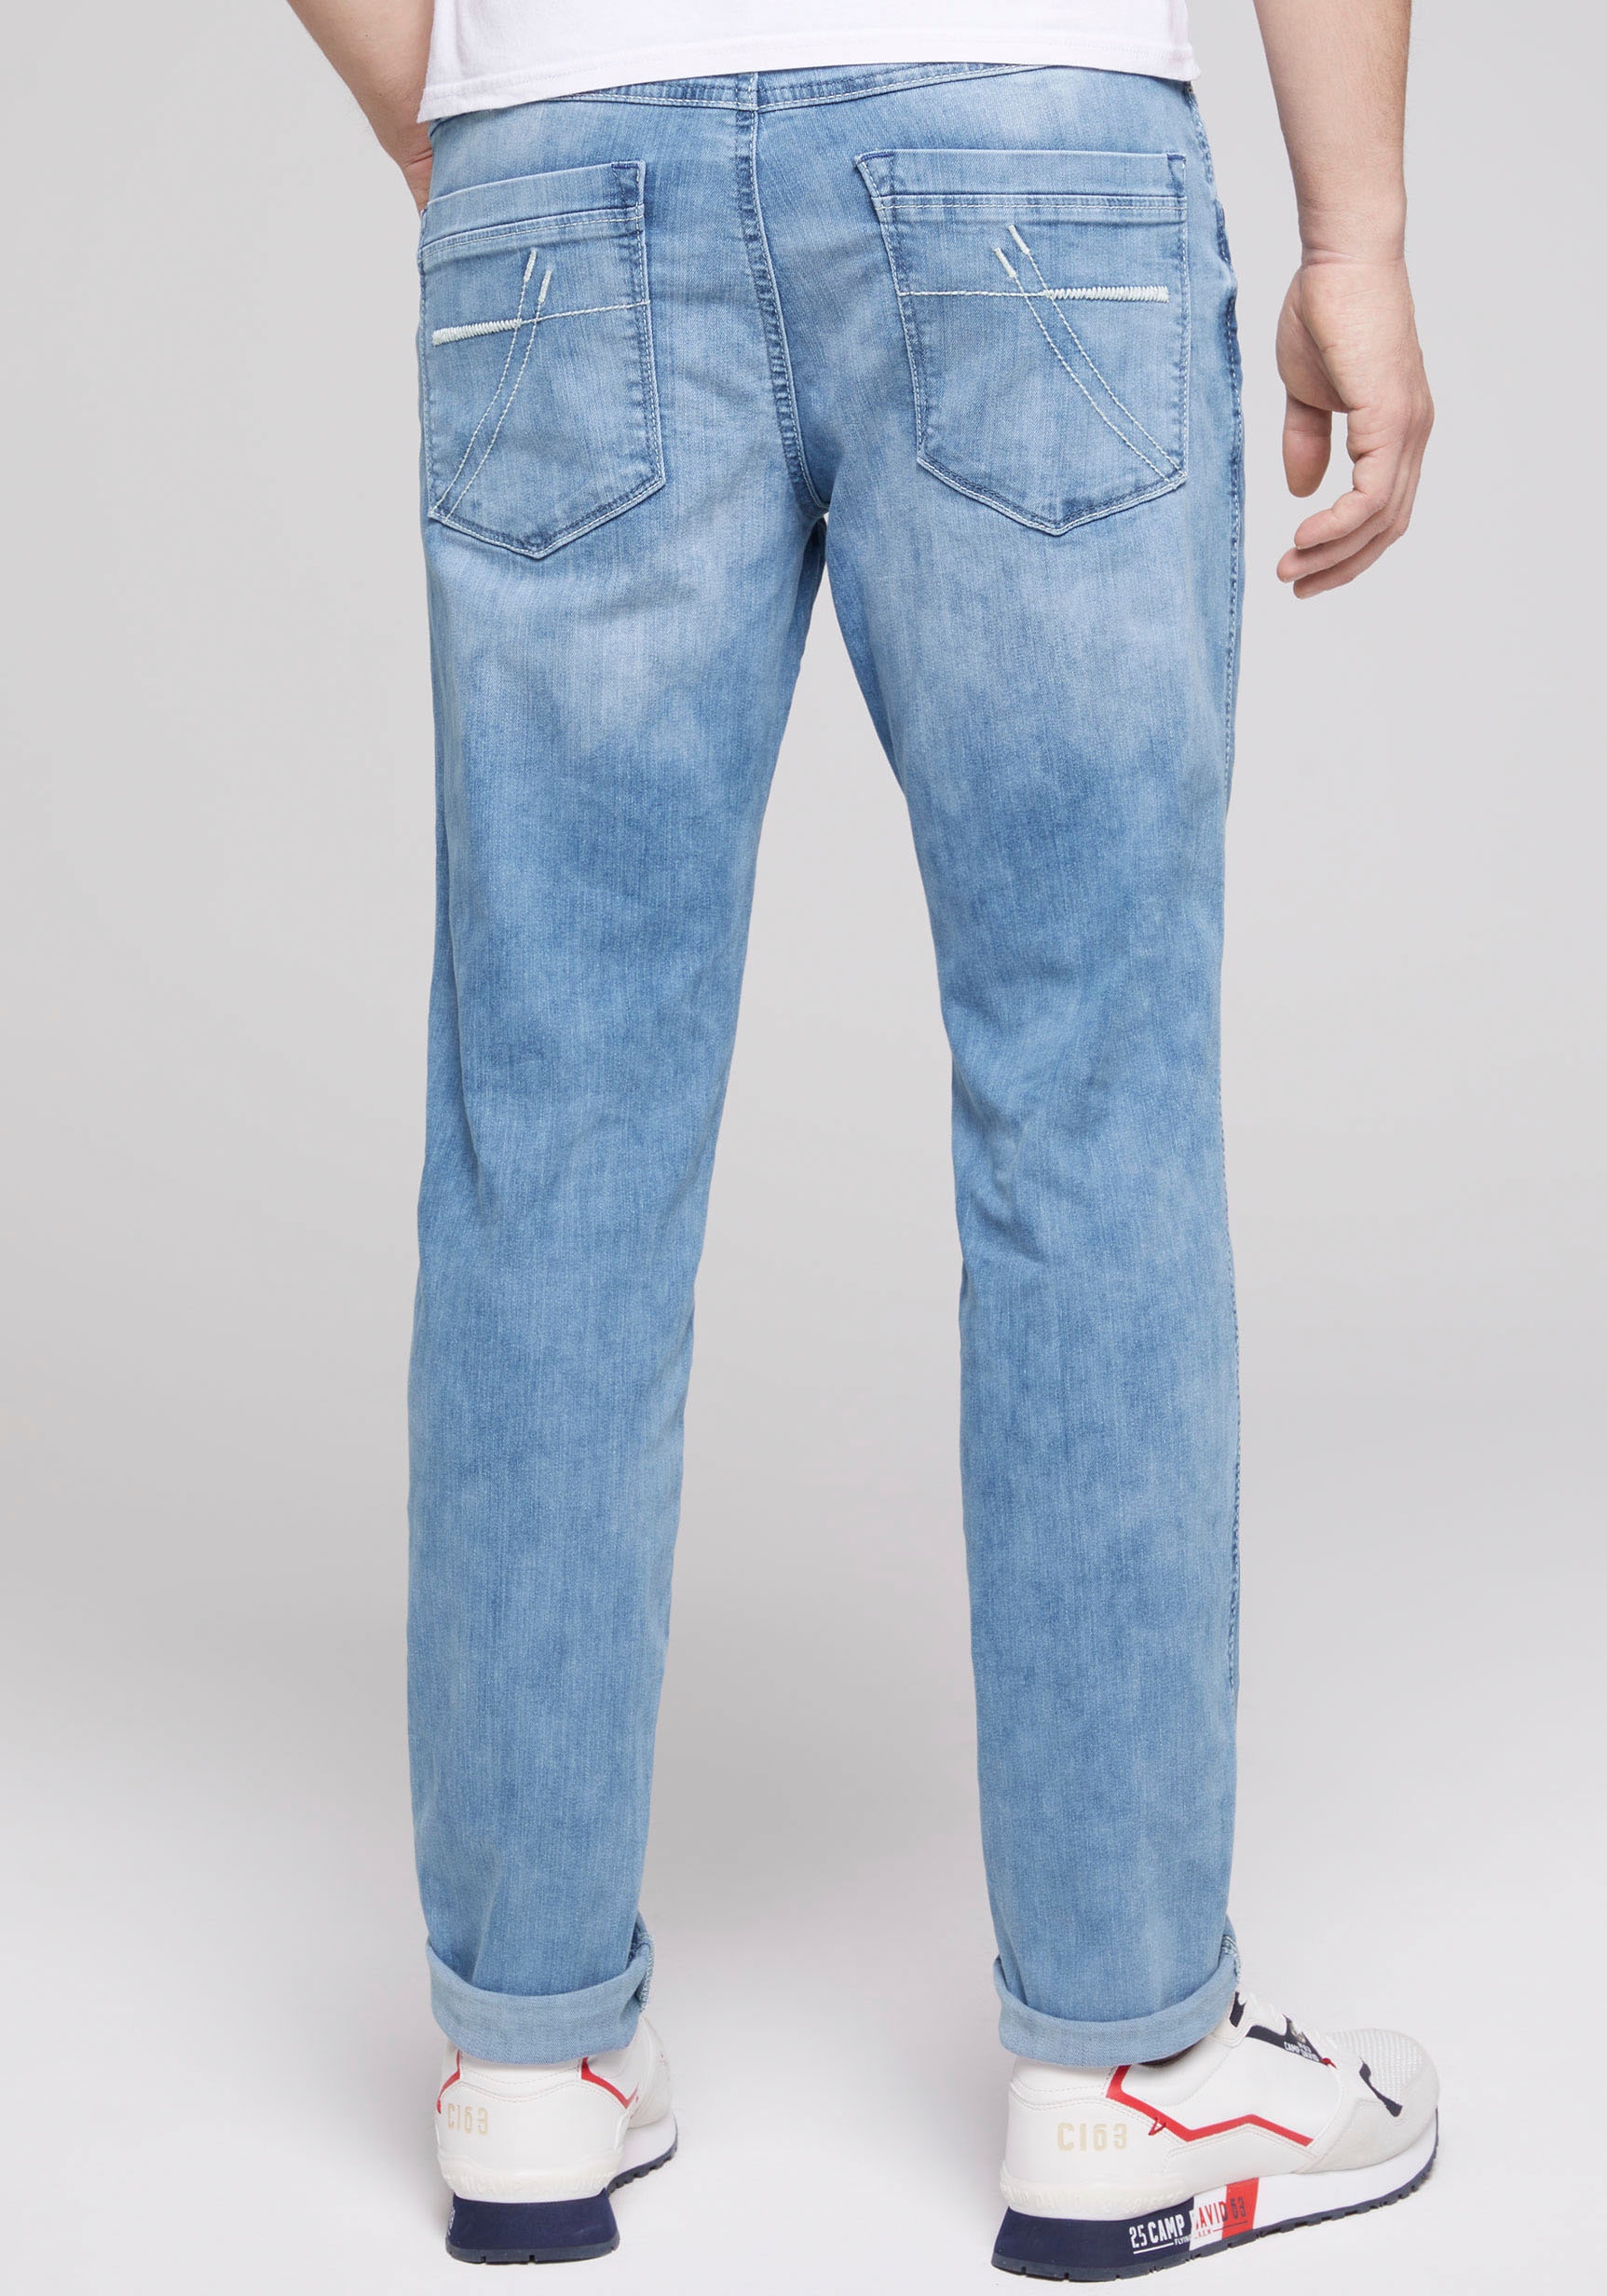 shoppen Bequeme ➤ Rechnung Jeans auf